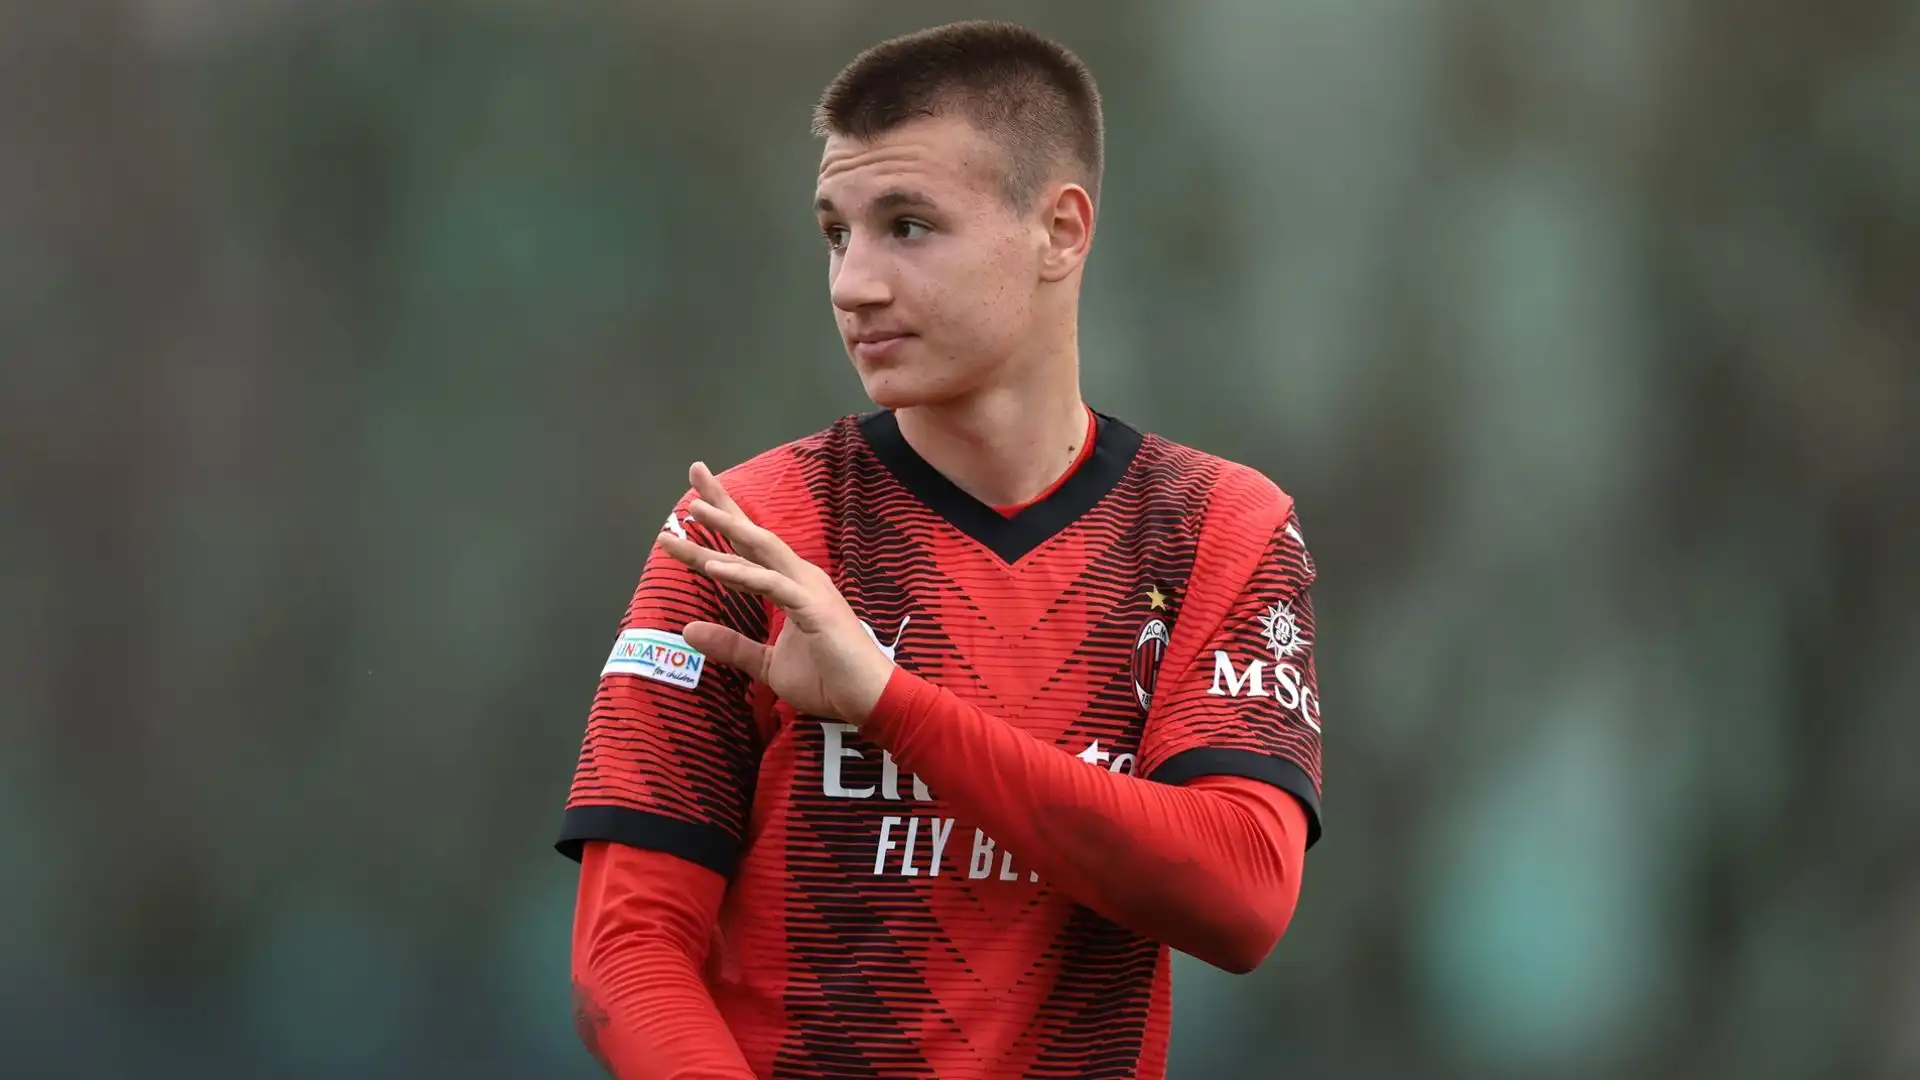 L'attaccante delle giovanili rossonere, astro nascente del Milan, a 14 anni venne contattato dalla Juventus